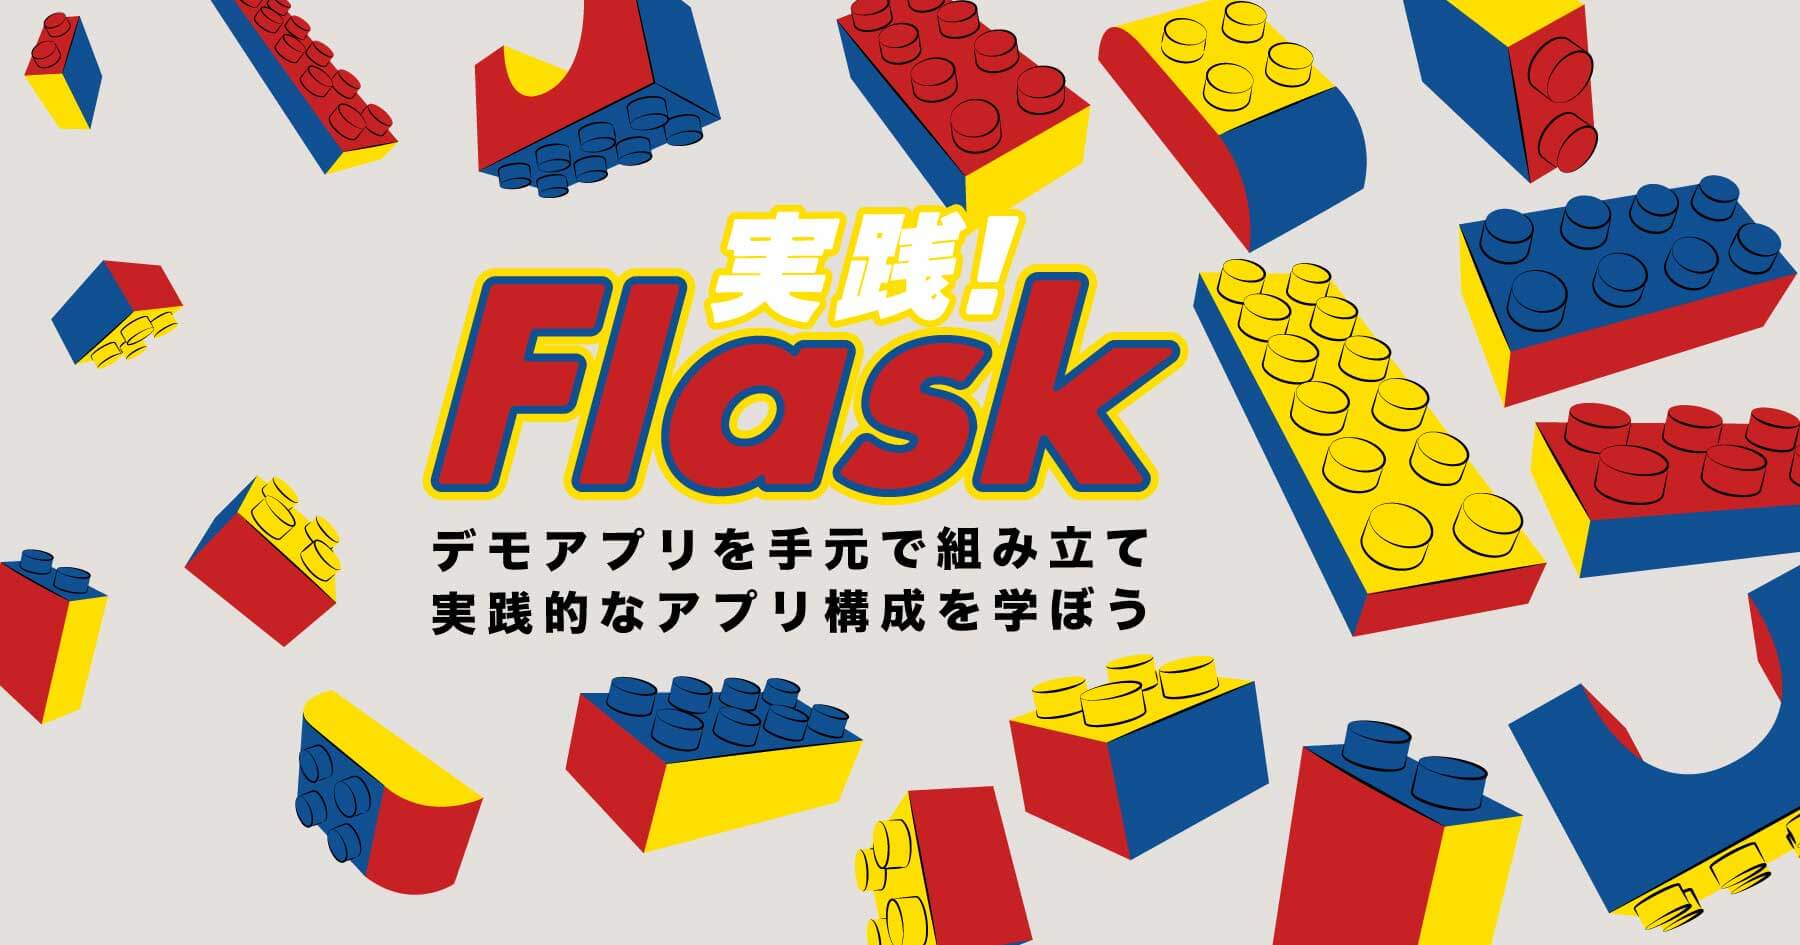 Flask実践入門 - 基本的なアプリ構成を問い合わせフォームをつくりながら学ぶ